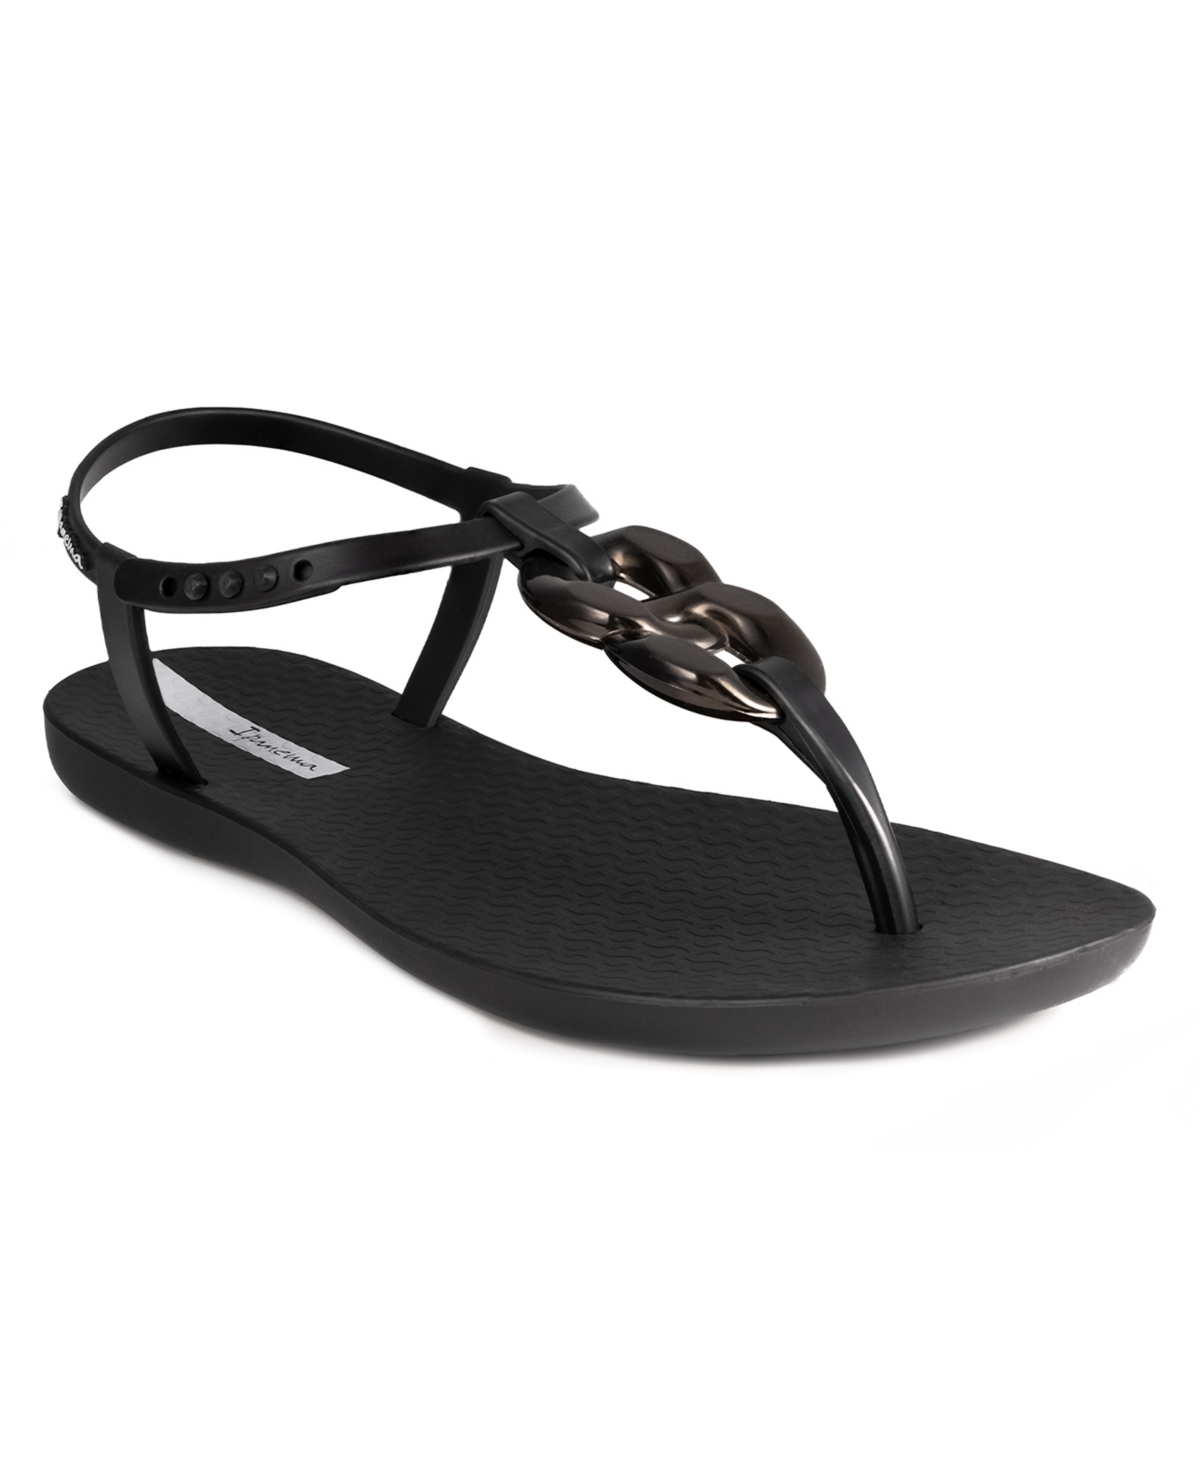 Women's Class Connect T-Strap Comfort Sandals - Black